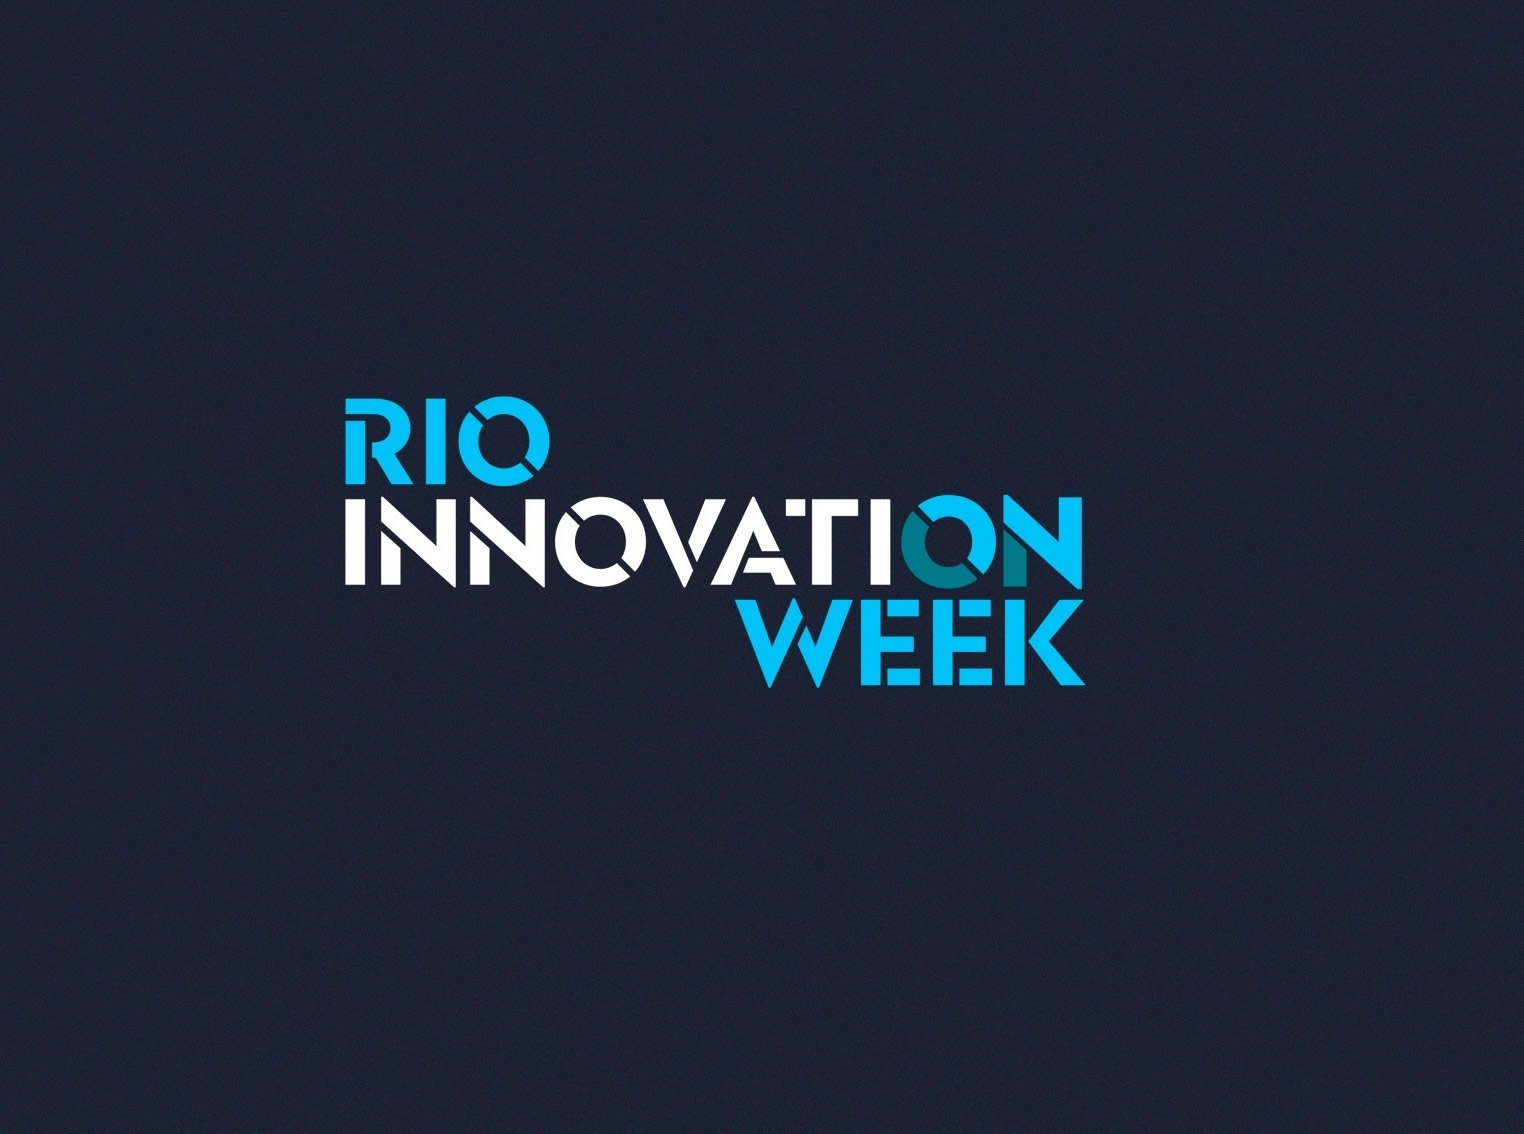 Cambici convidada a representar Israel no Rio Innovation Week. Câmara